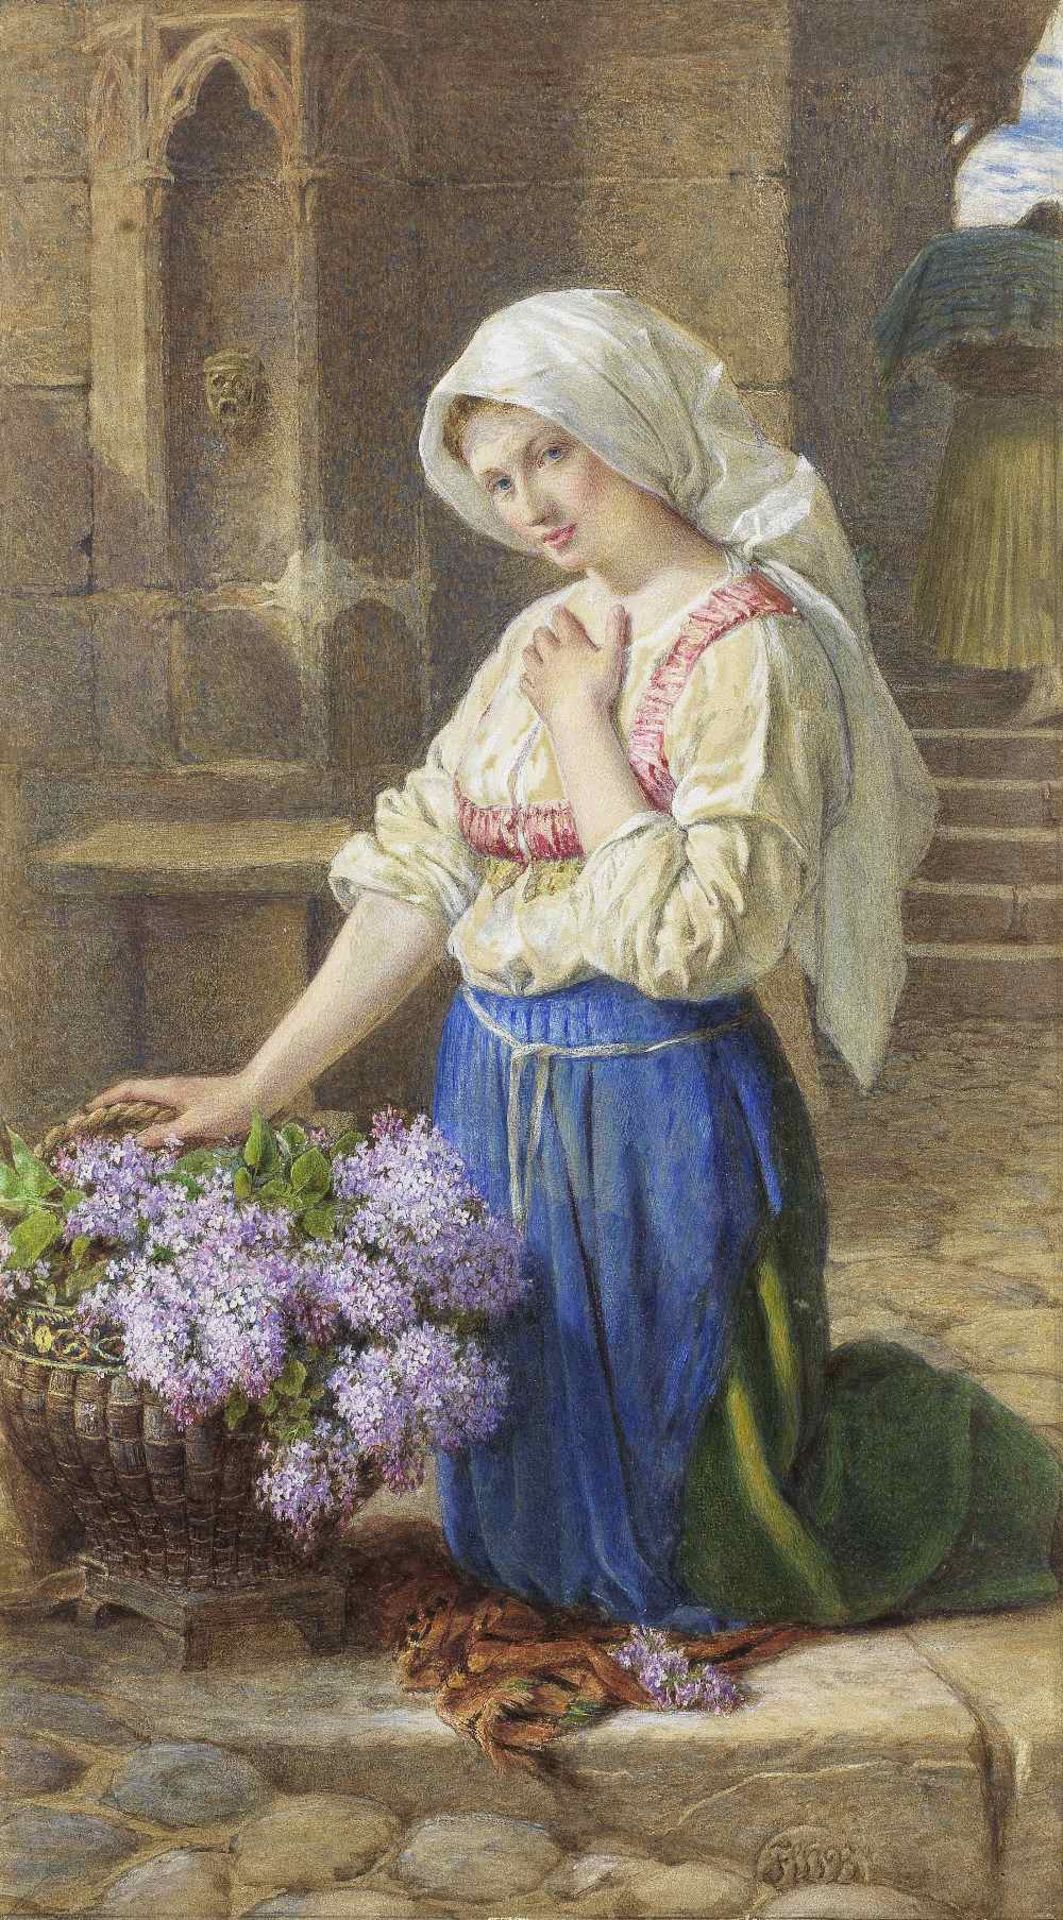 Sir Frederic William Burton, RHA, FSA (Irish, 1816-1900) The Lilac Seller